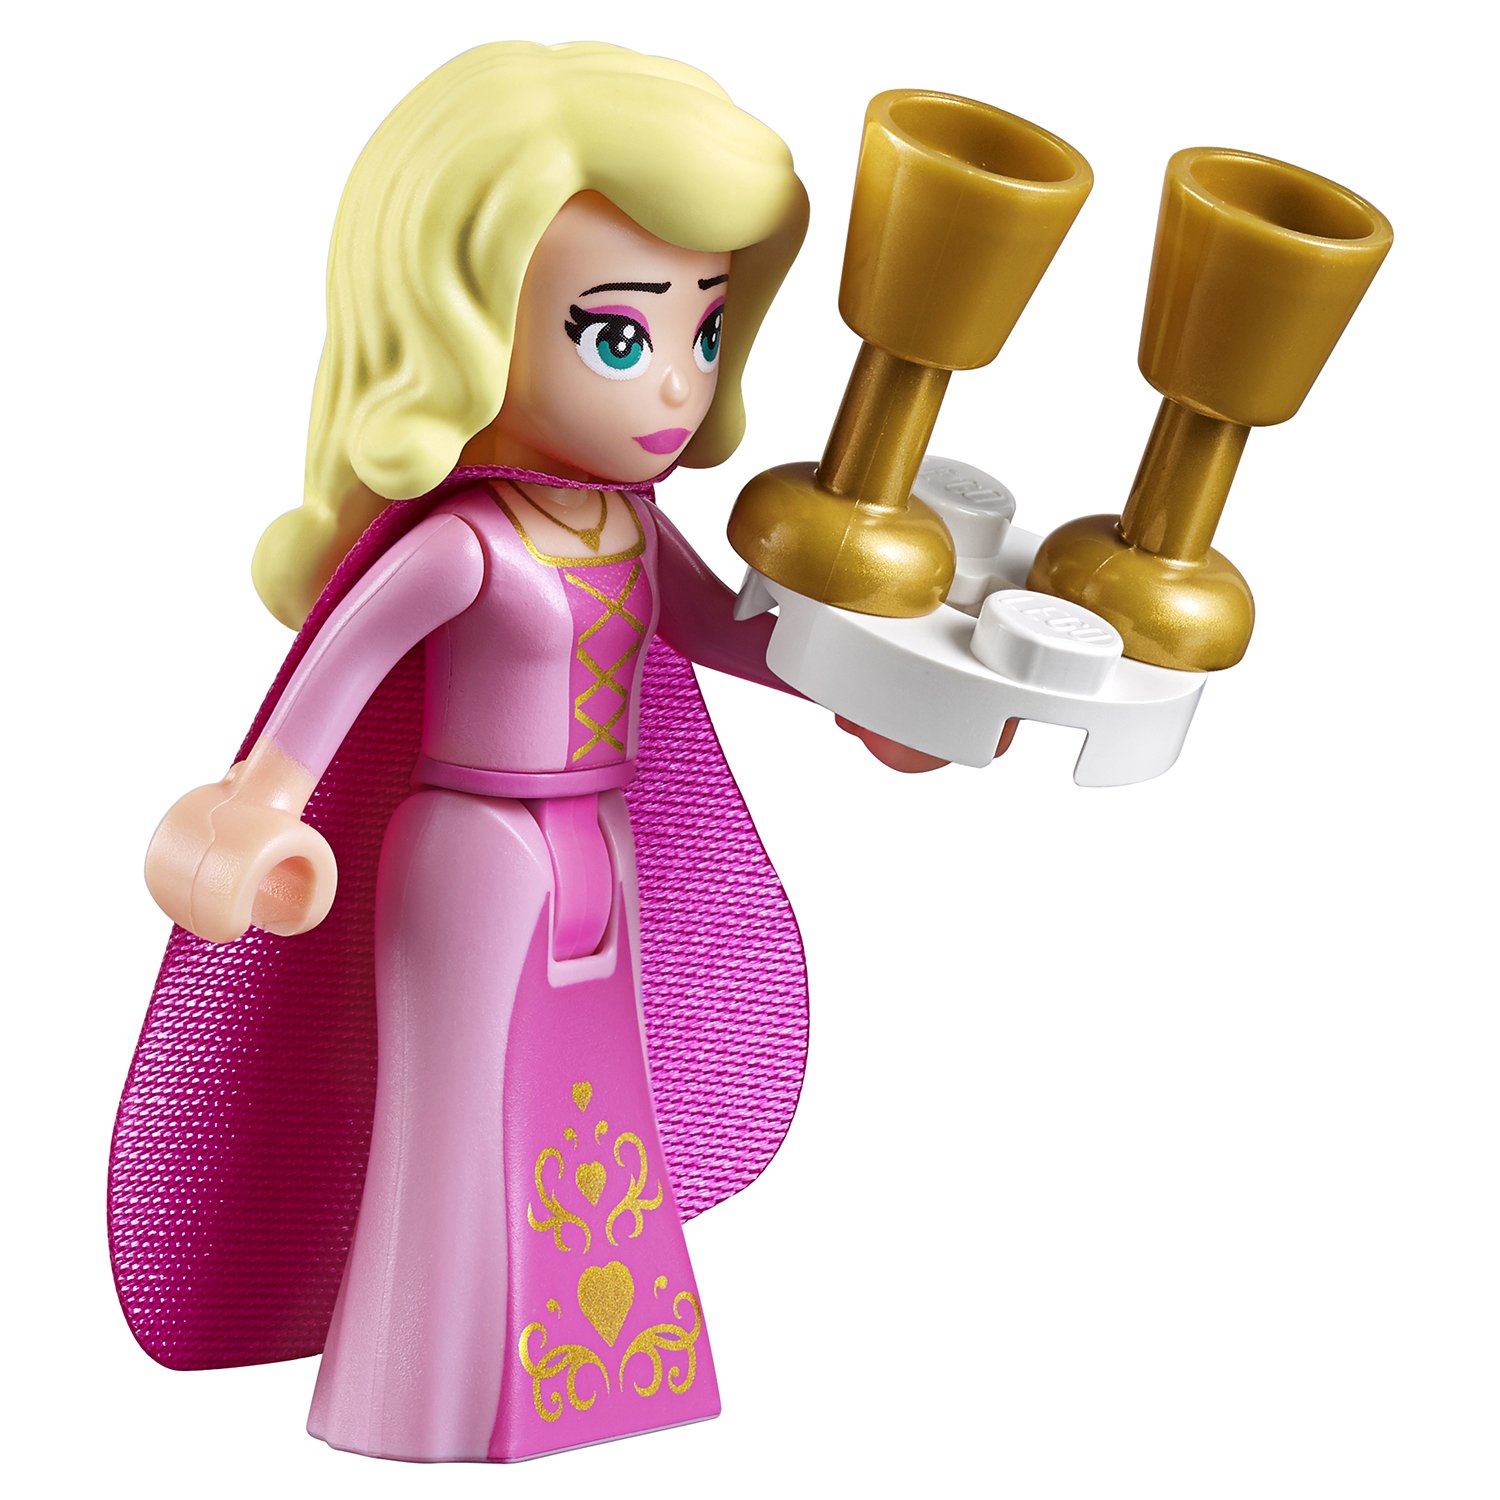 Конструктор из серии The Lego Movie 2: Познакомьтесь с королевой Многоликой Прекрасной  